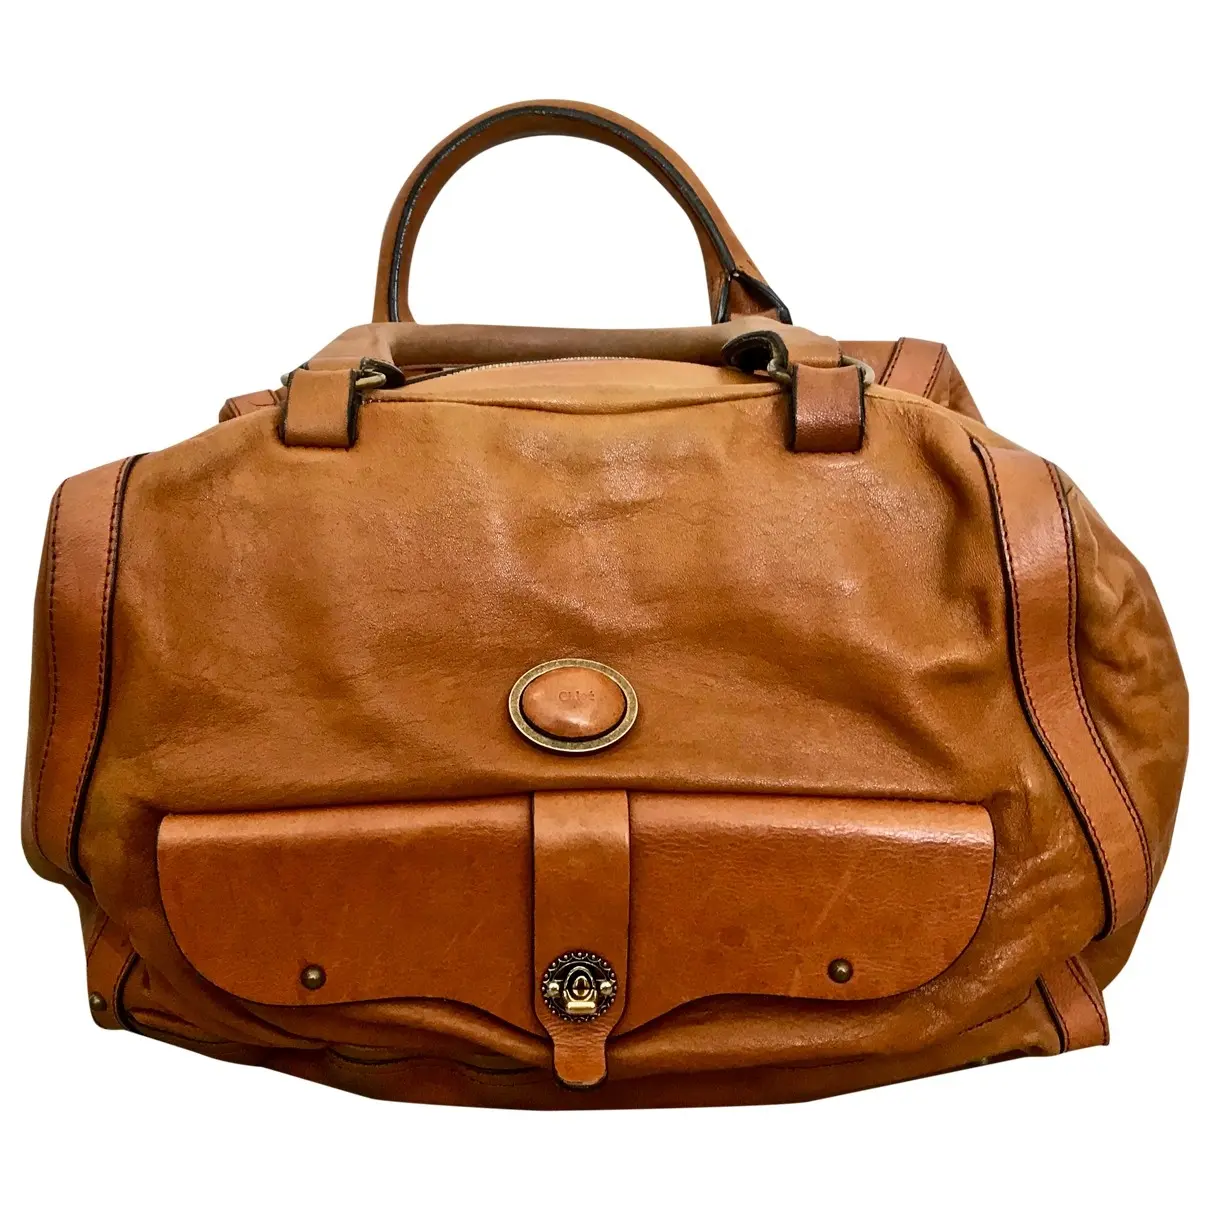 Leather handbag Chloé